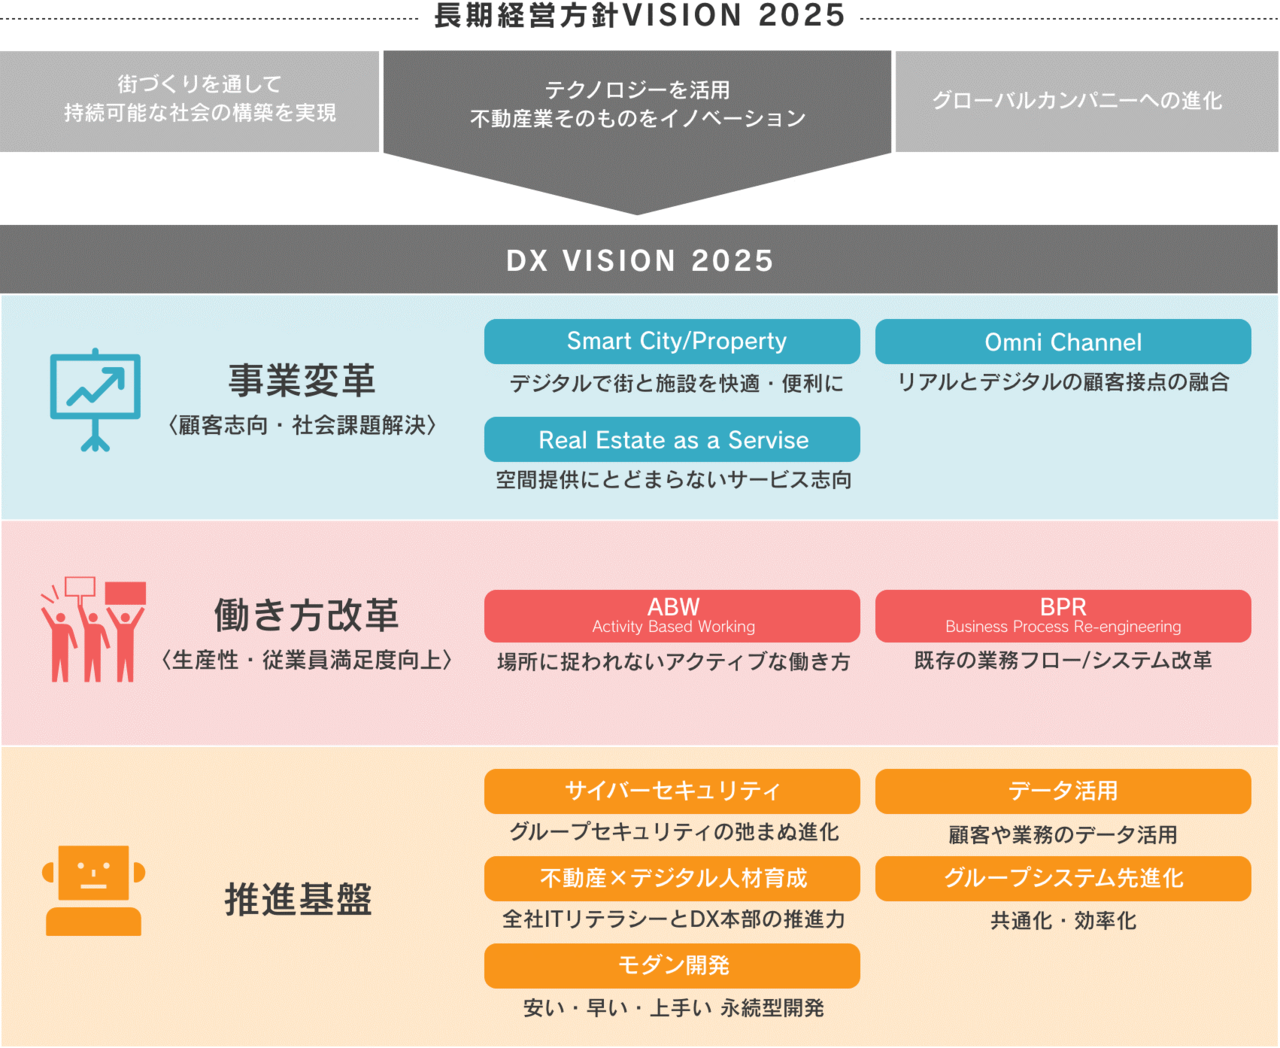 三井不動産、DX方針・推進体制・事例をまとめた「2020 DX白書」を公開